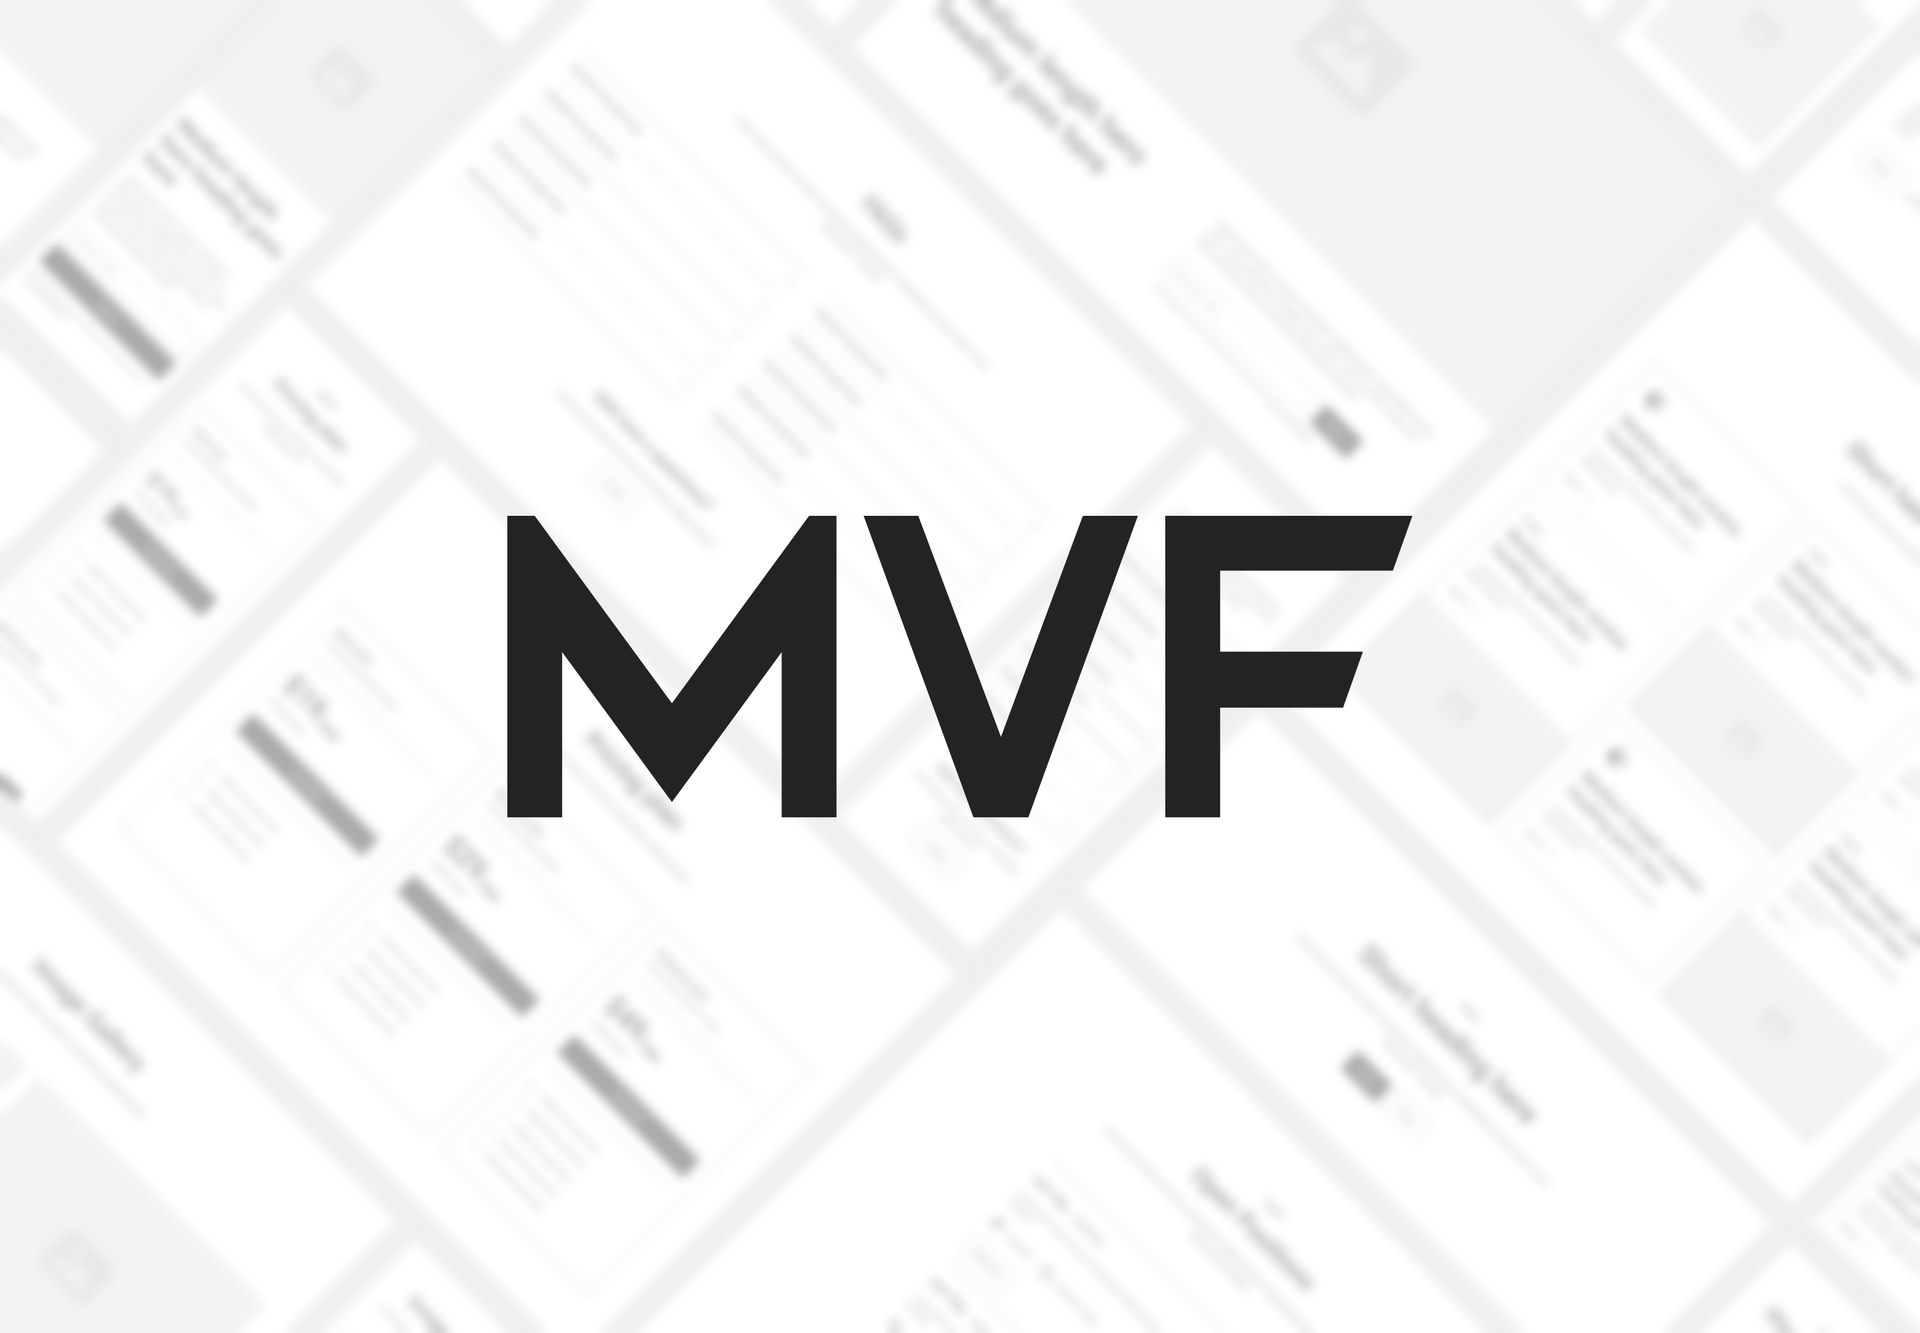 MVF Global